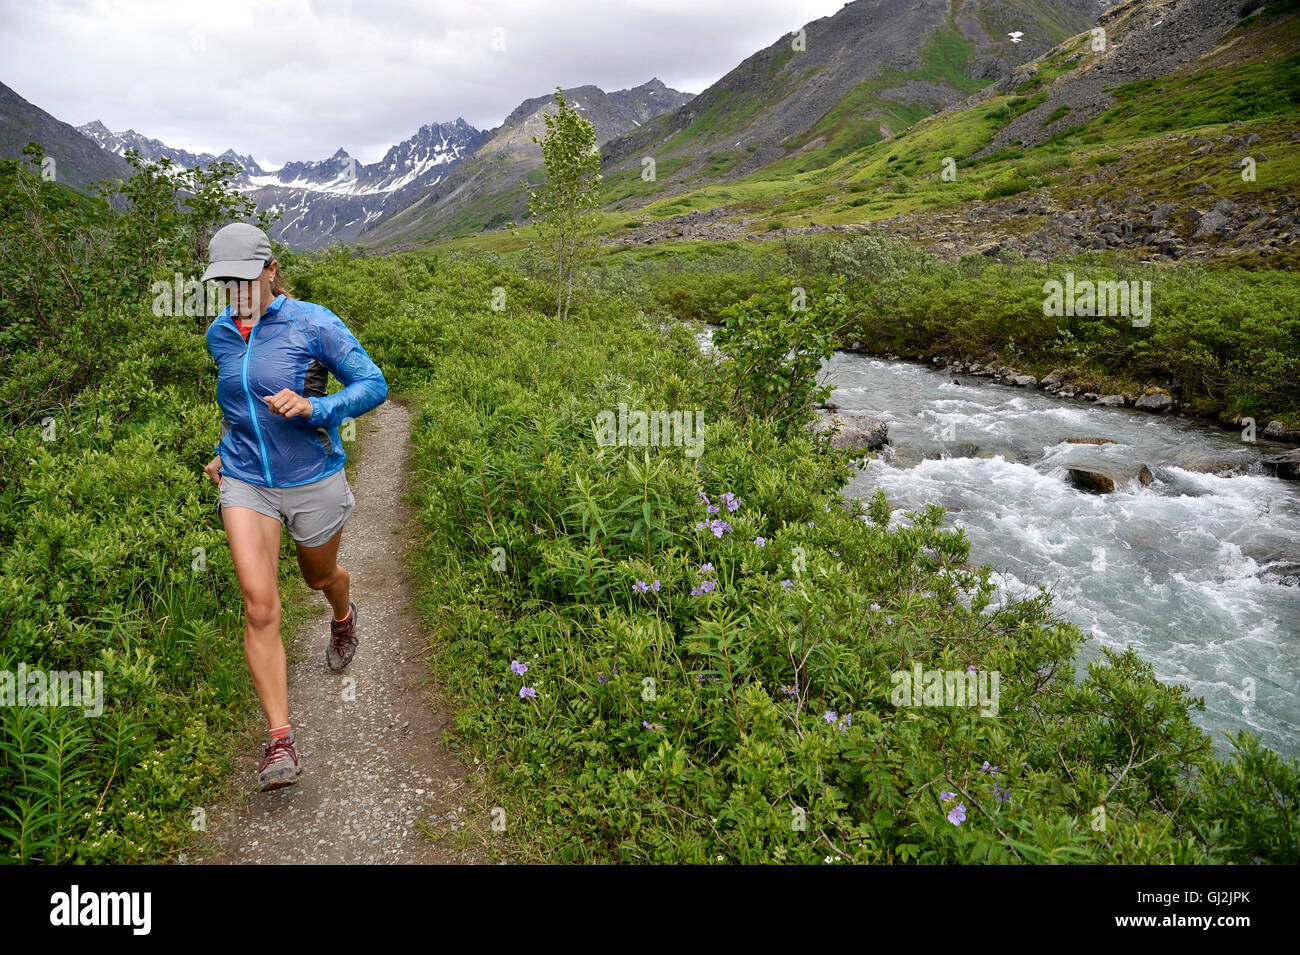 Woman running the Gold Mint Trail by Little Susitna River, Talkeetna Mountains near Hatcher Pass, Alaska, USA Stock Photo